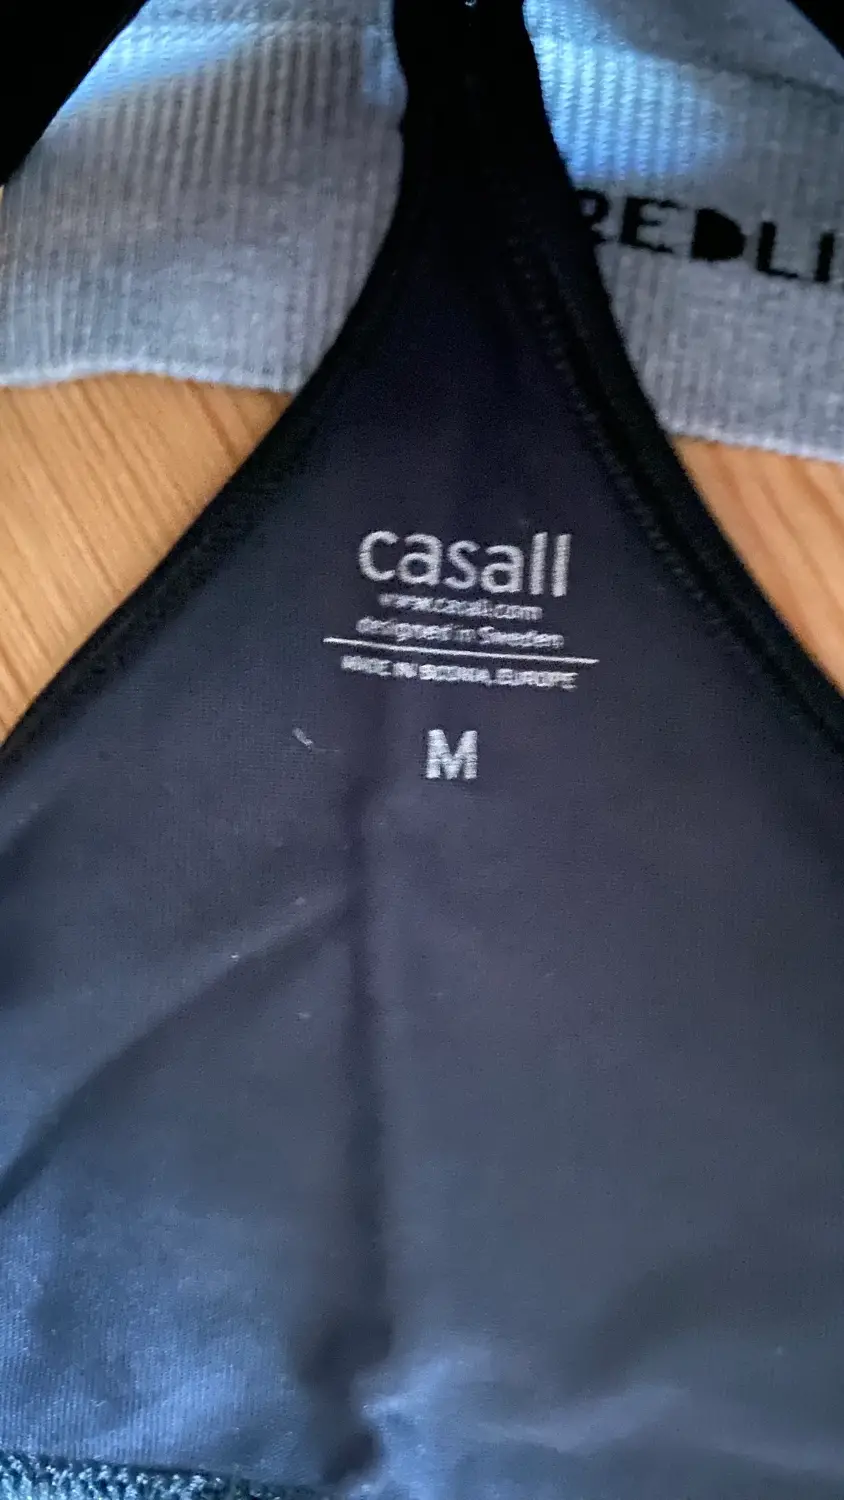 Casall andet sportstøj